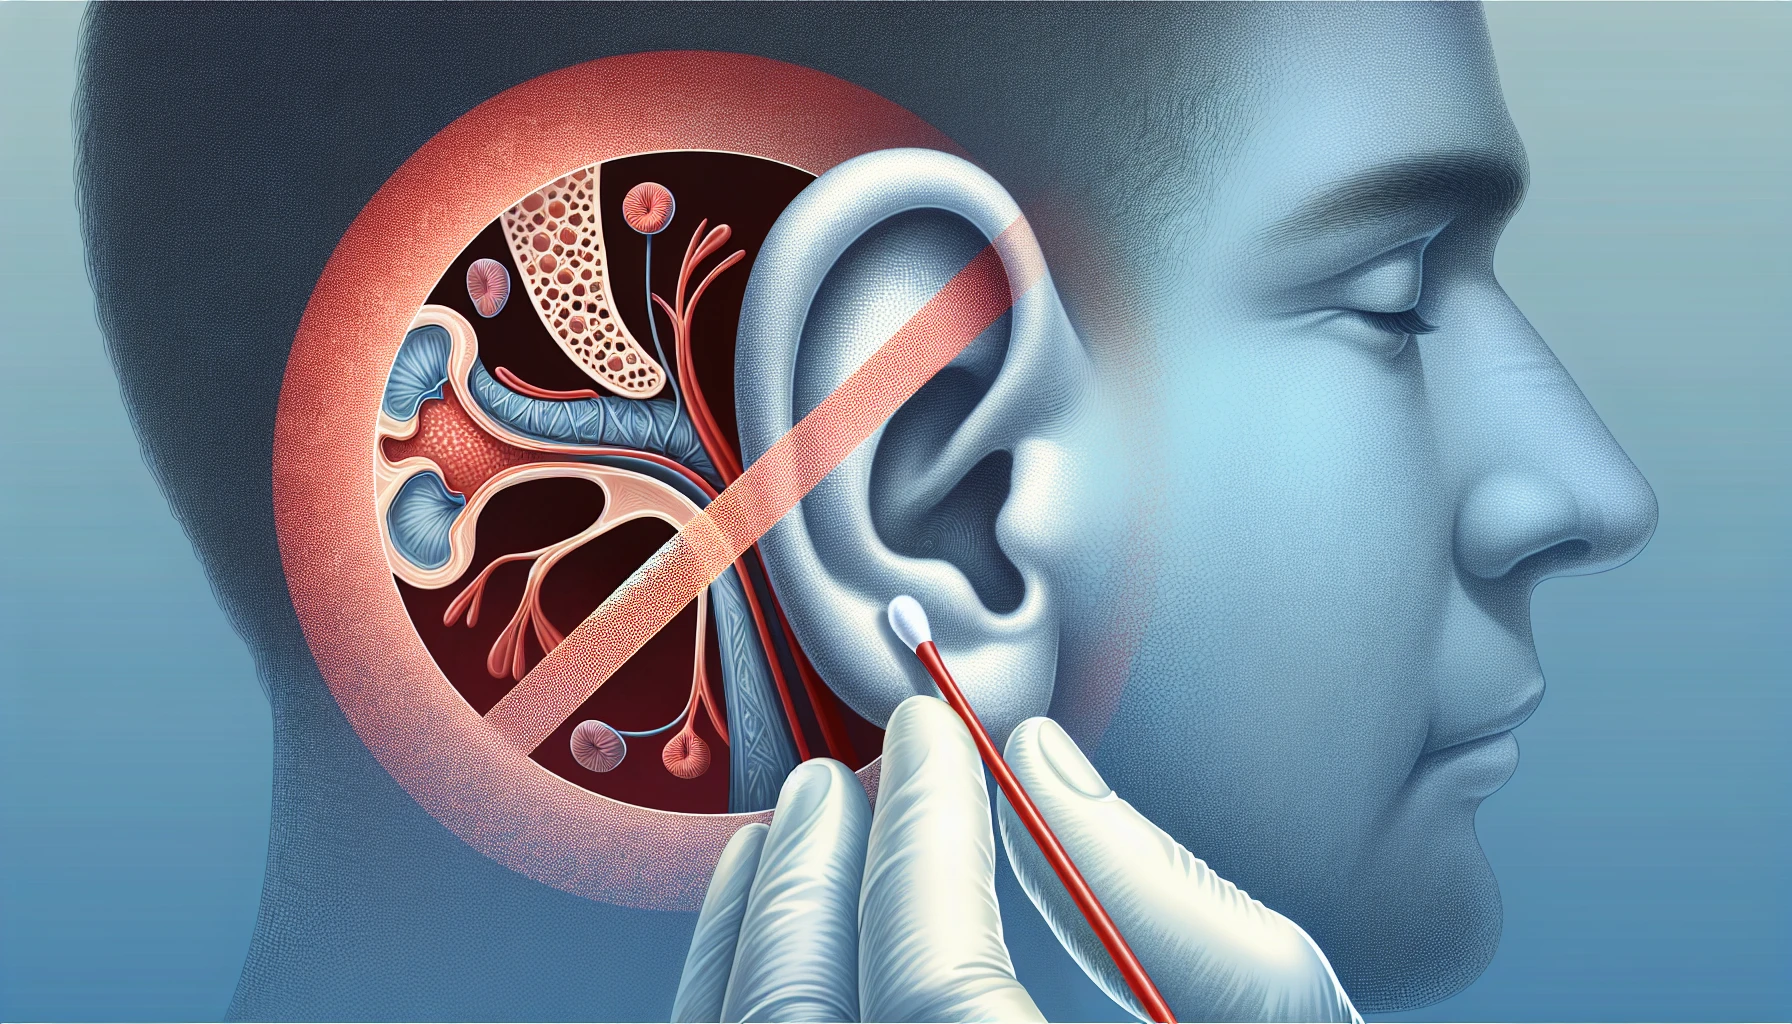 Illustration of proper ear hygiene practices